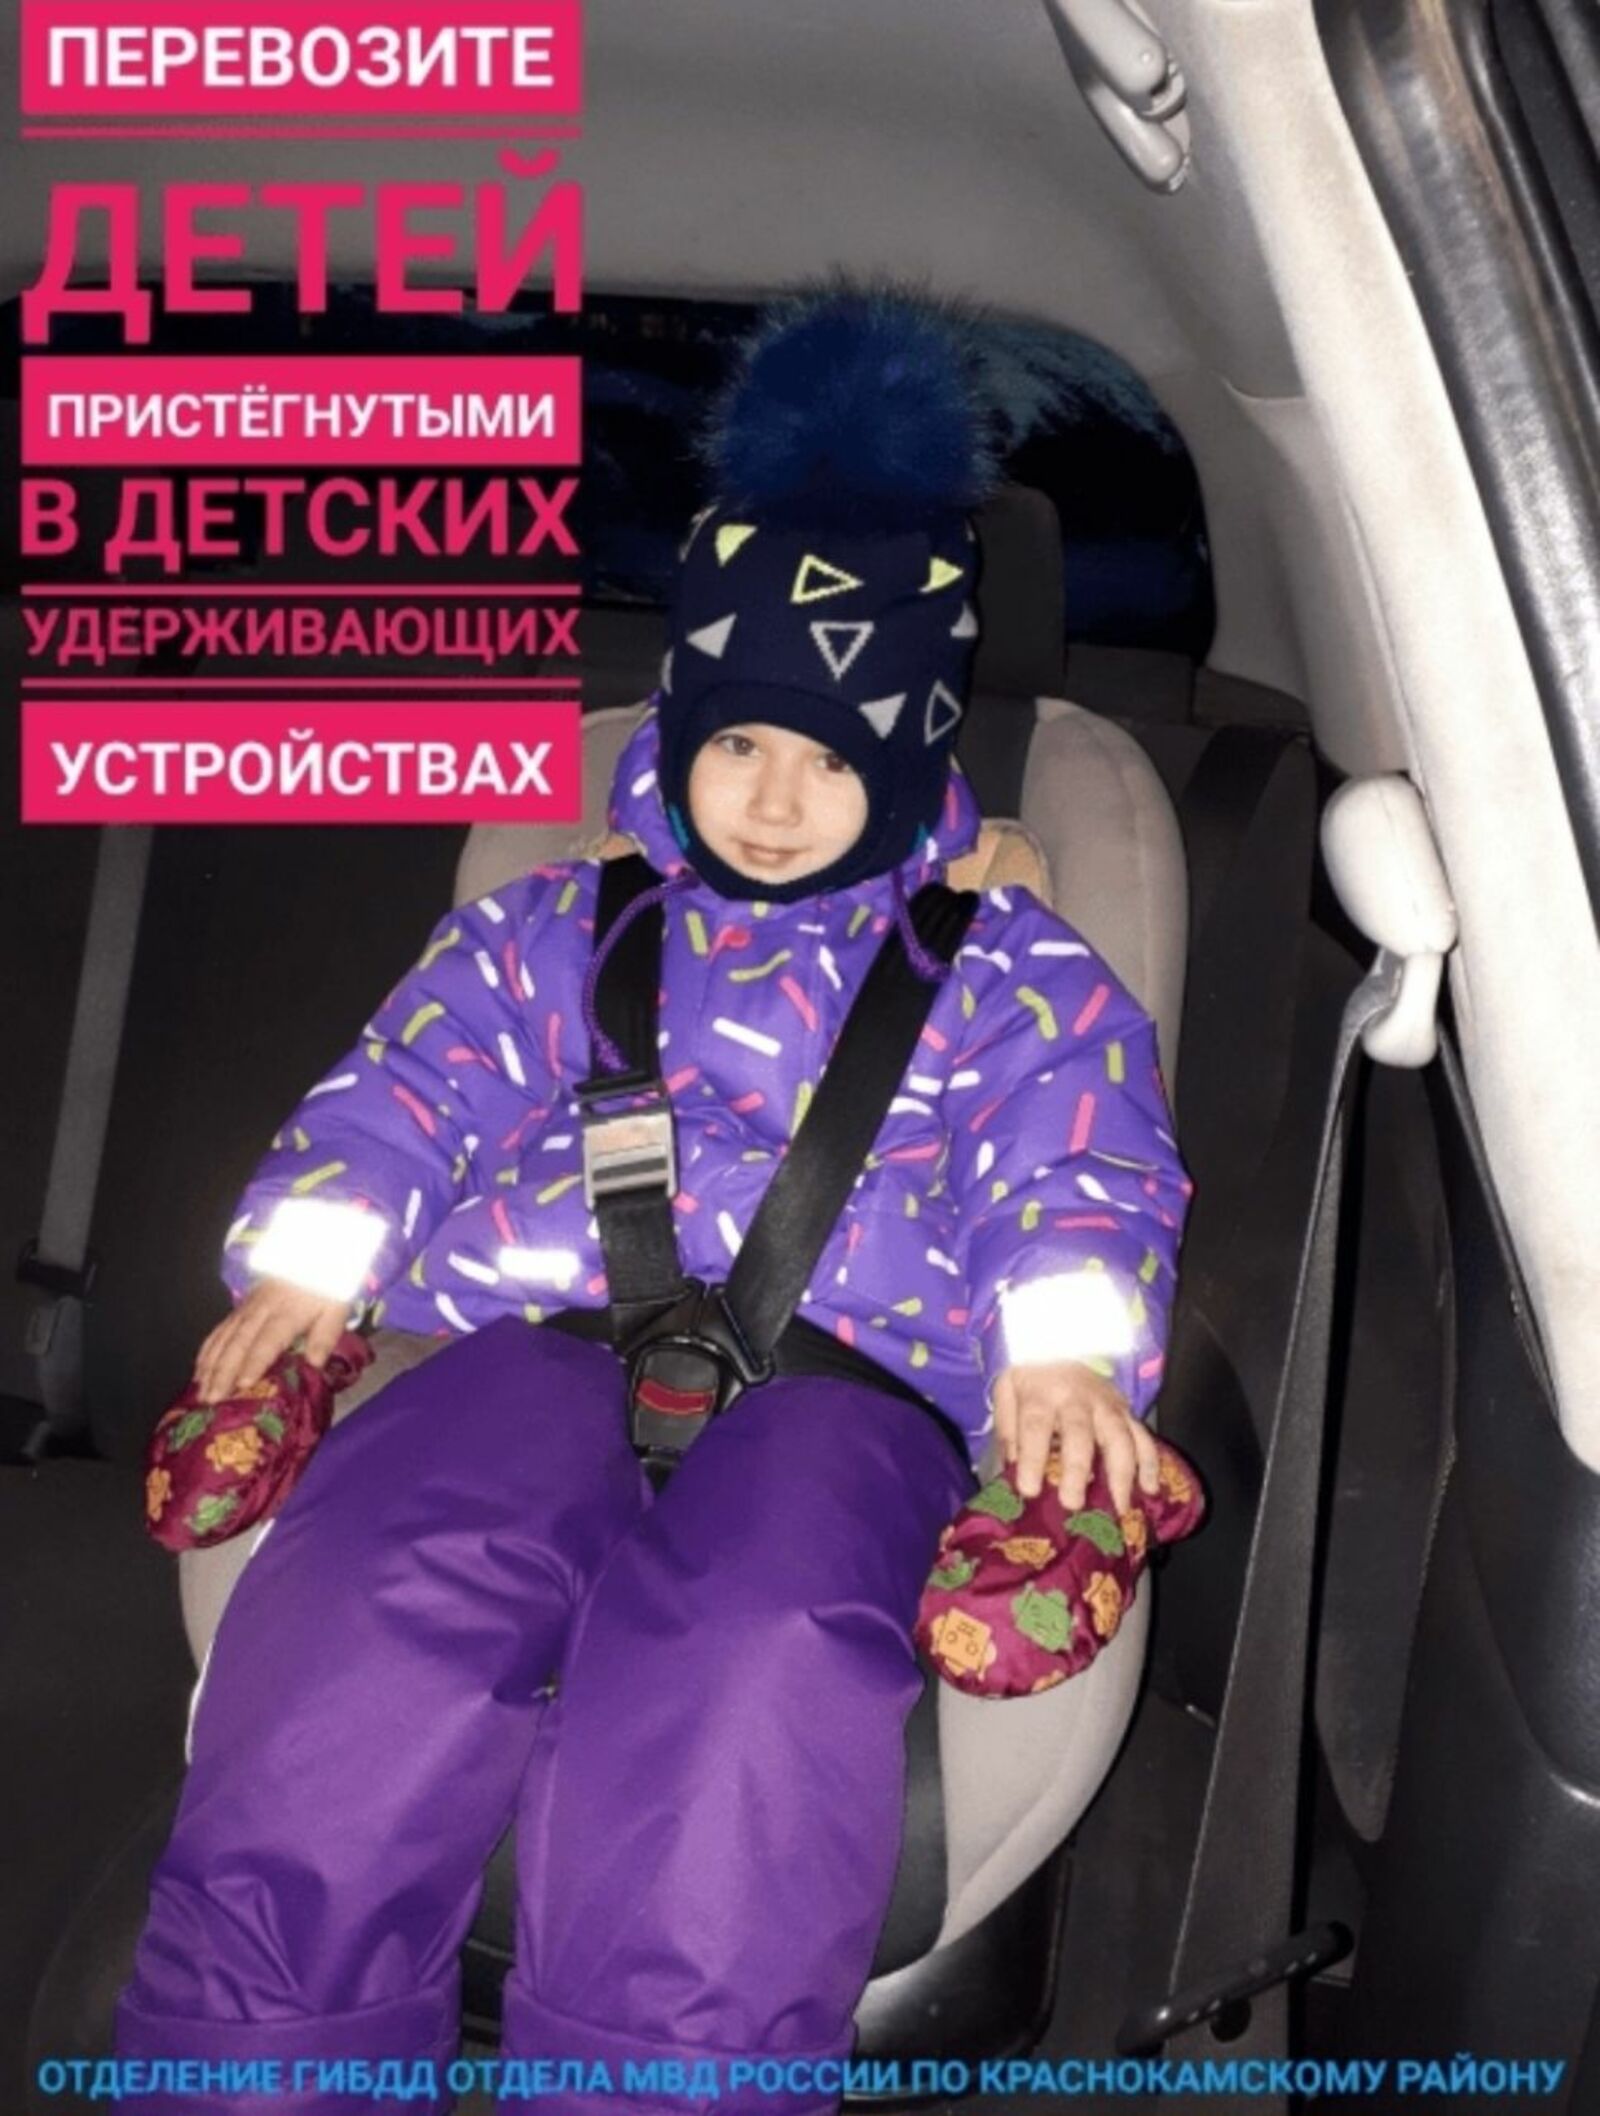 Юный инспектор движения МАДОУ Детский сад "Берёзка"с.Николо-Берёзовка, дисциплинированный пассажир Полина.